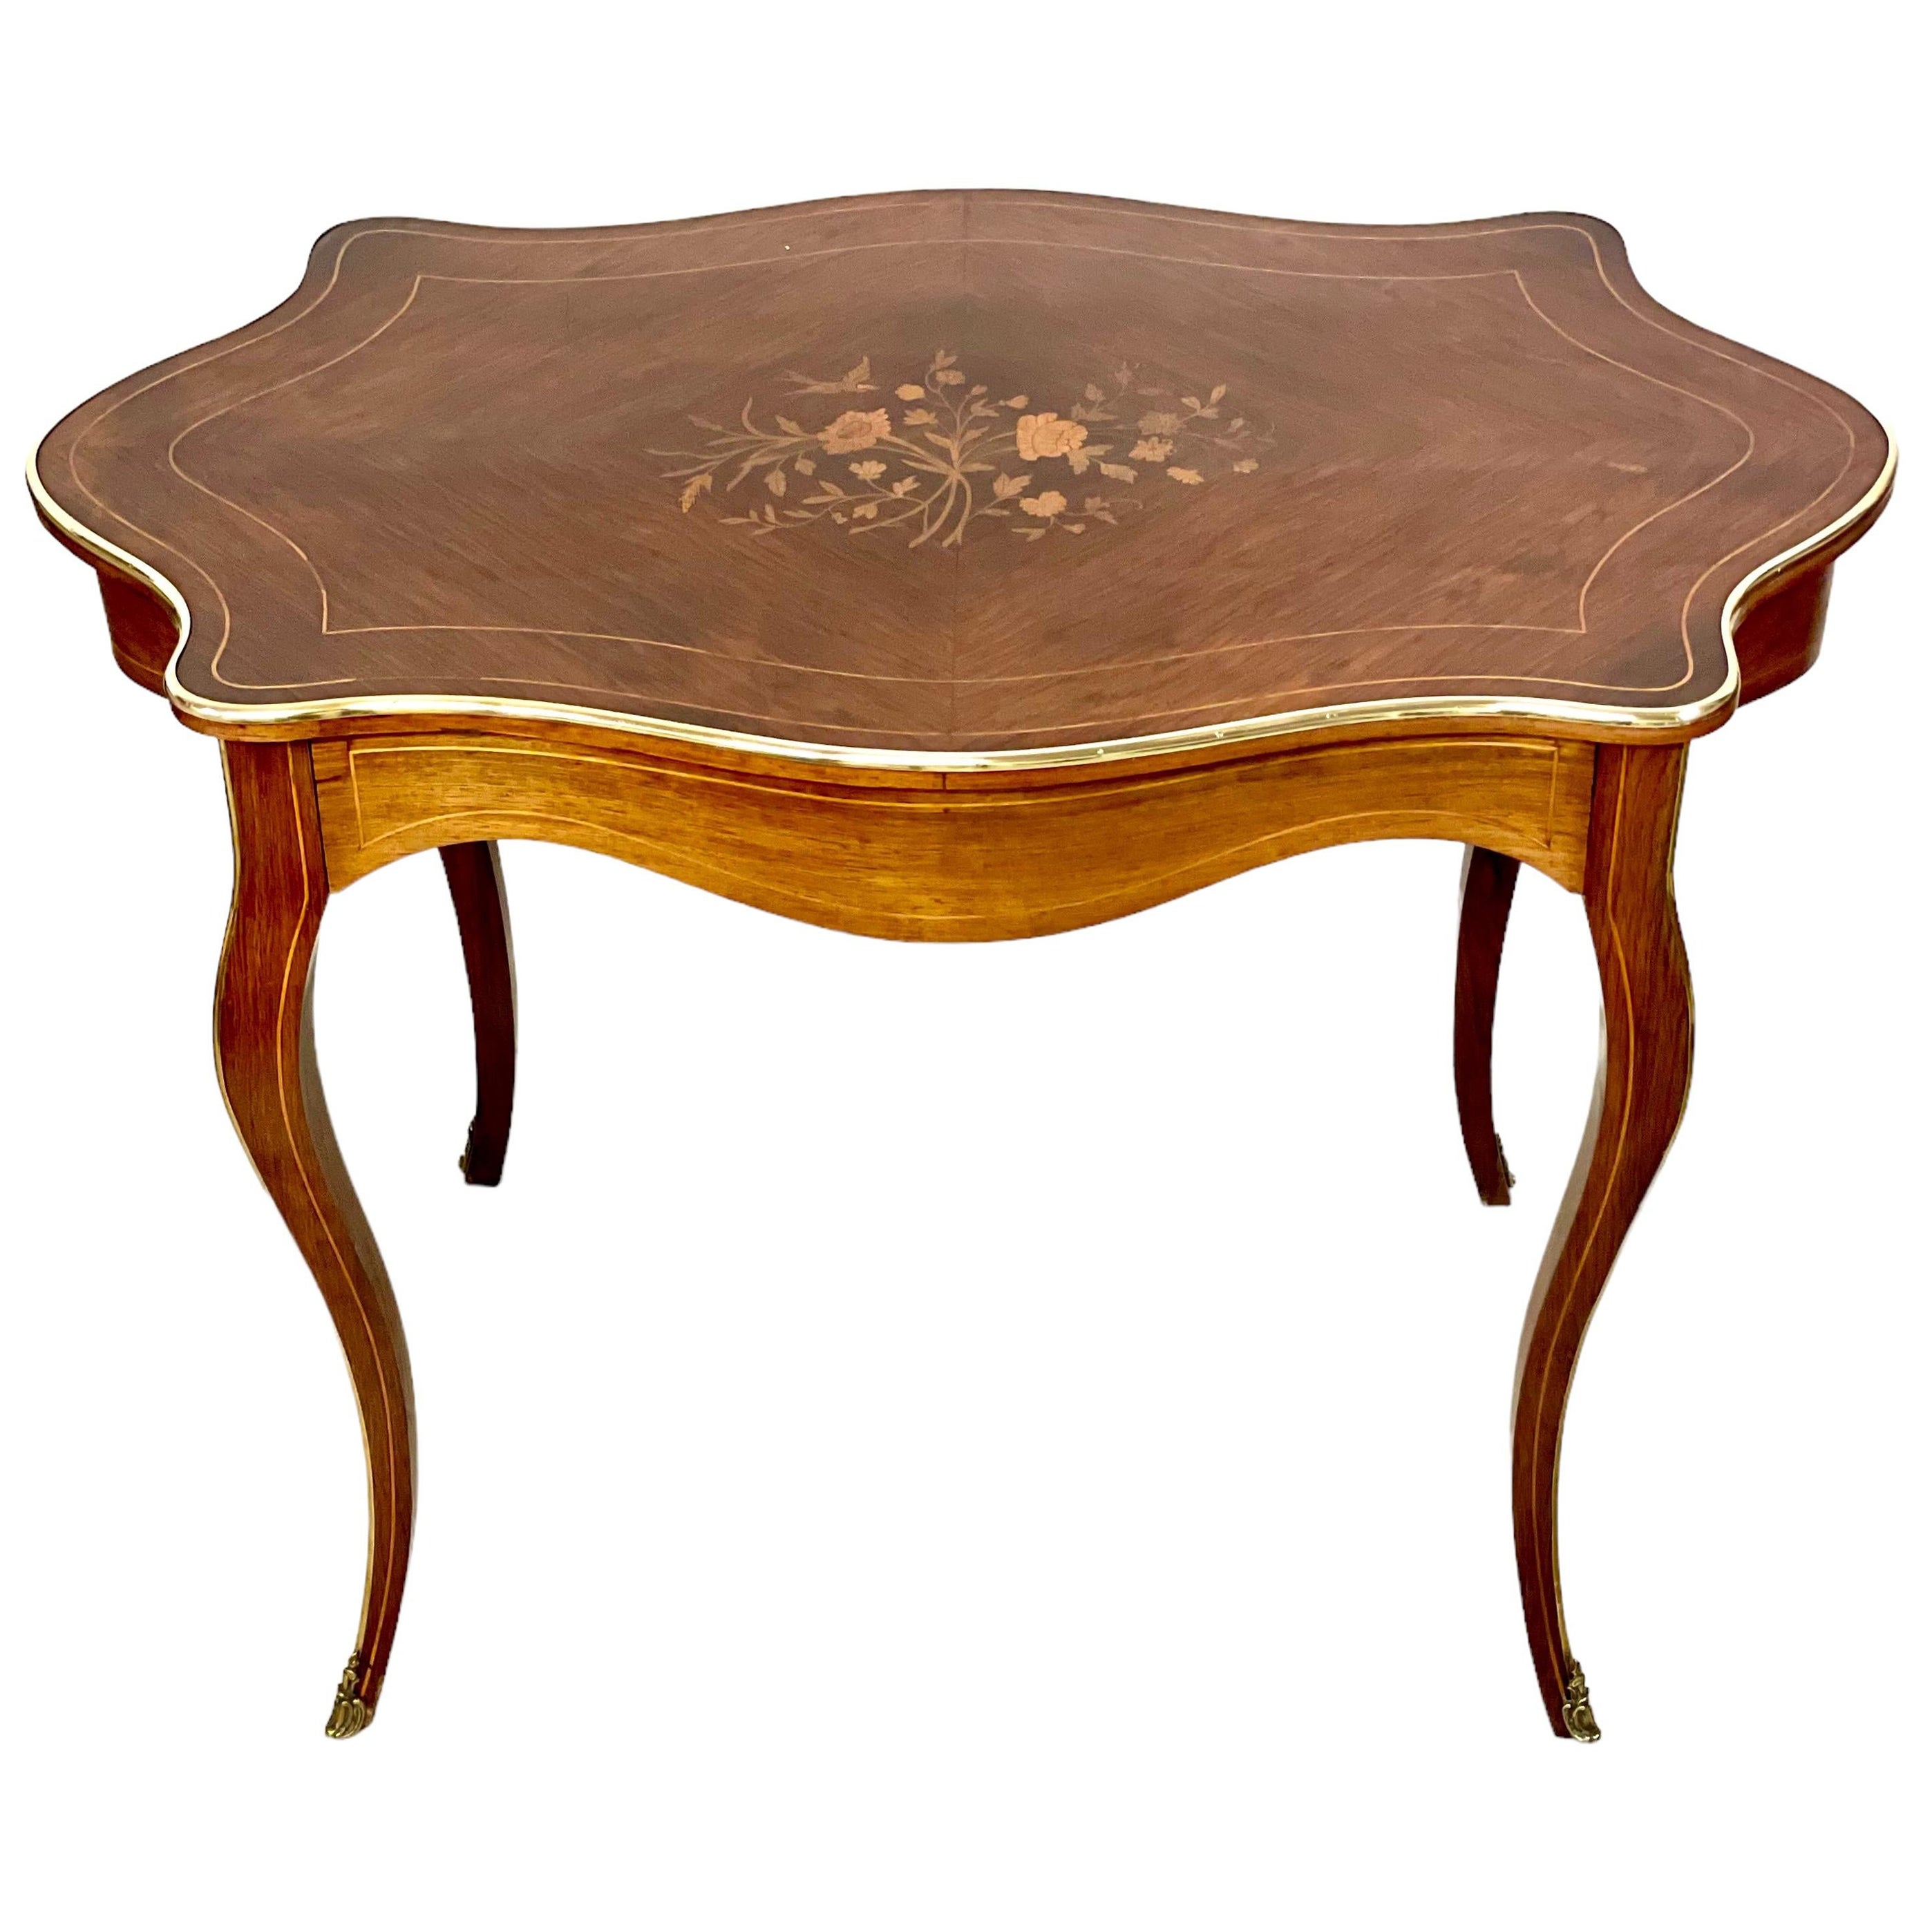 Bureau ou table centrale de style Louis XV du 19ème siècle